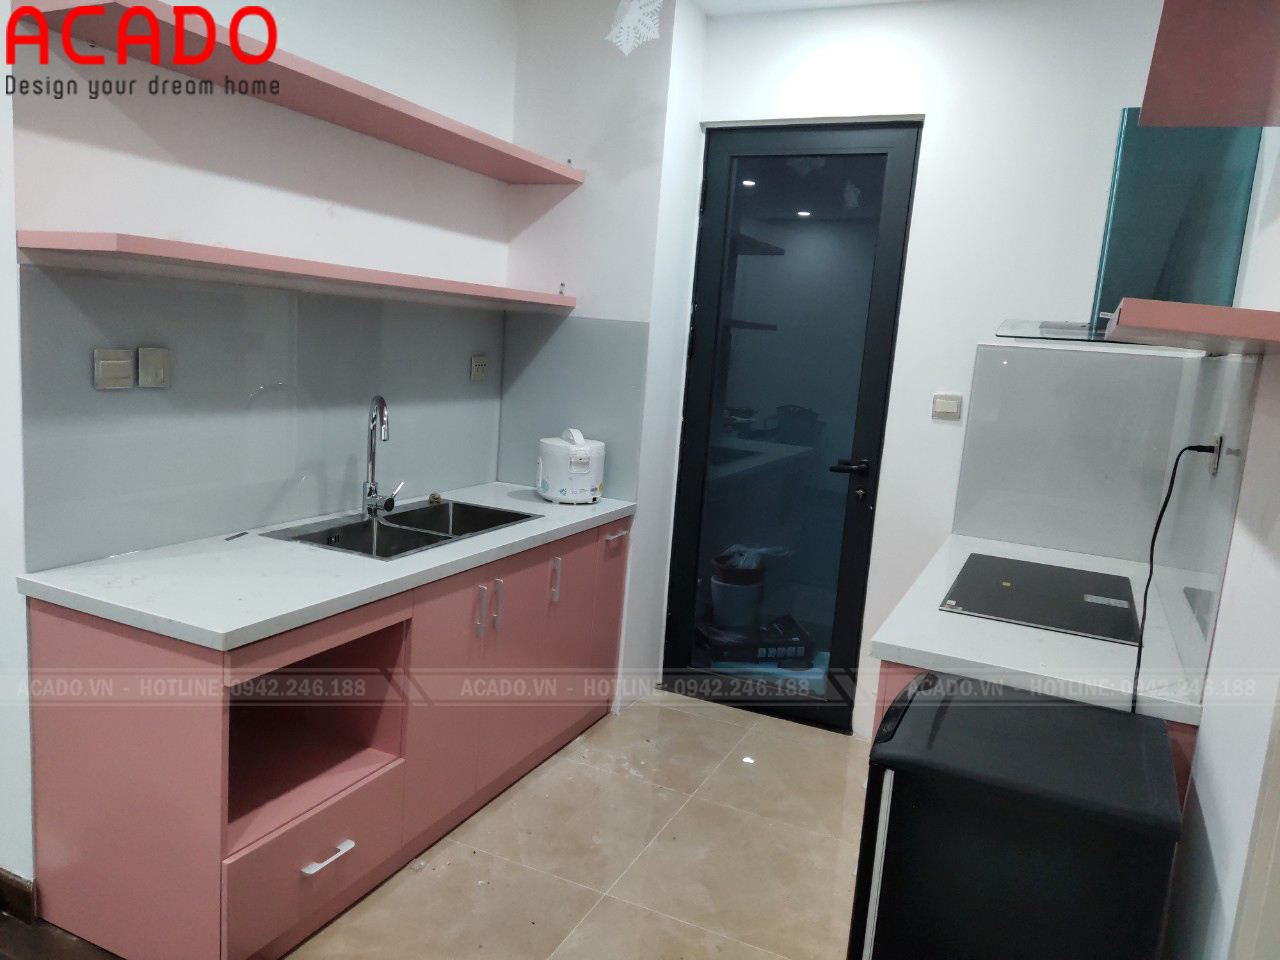 Tủ bếp được thiết kế với hai ngăn tủ đối diện, phù hợp với không gian bếp